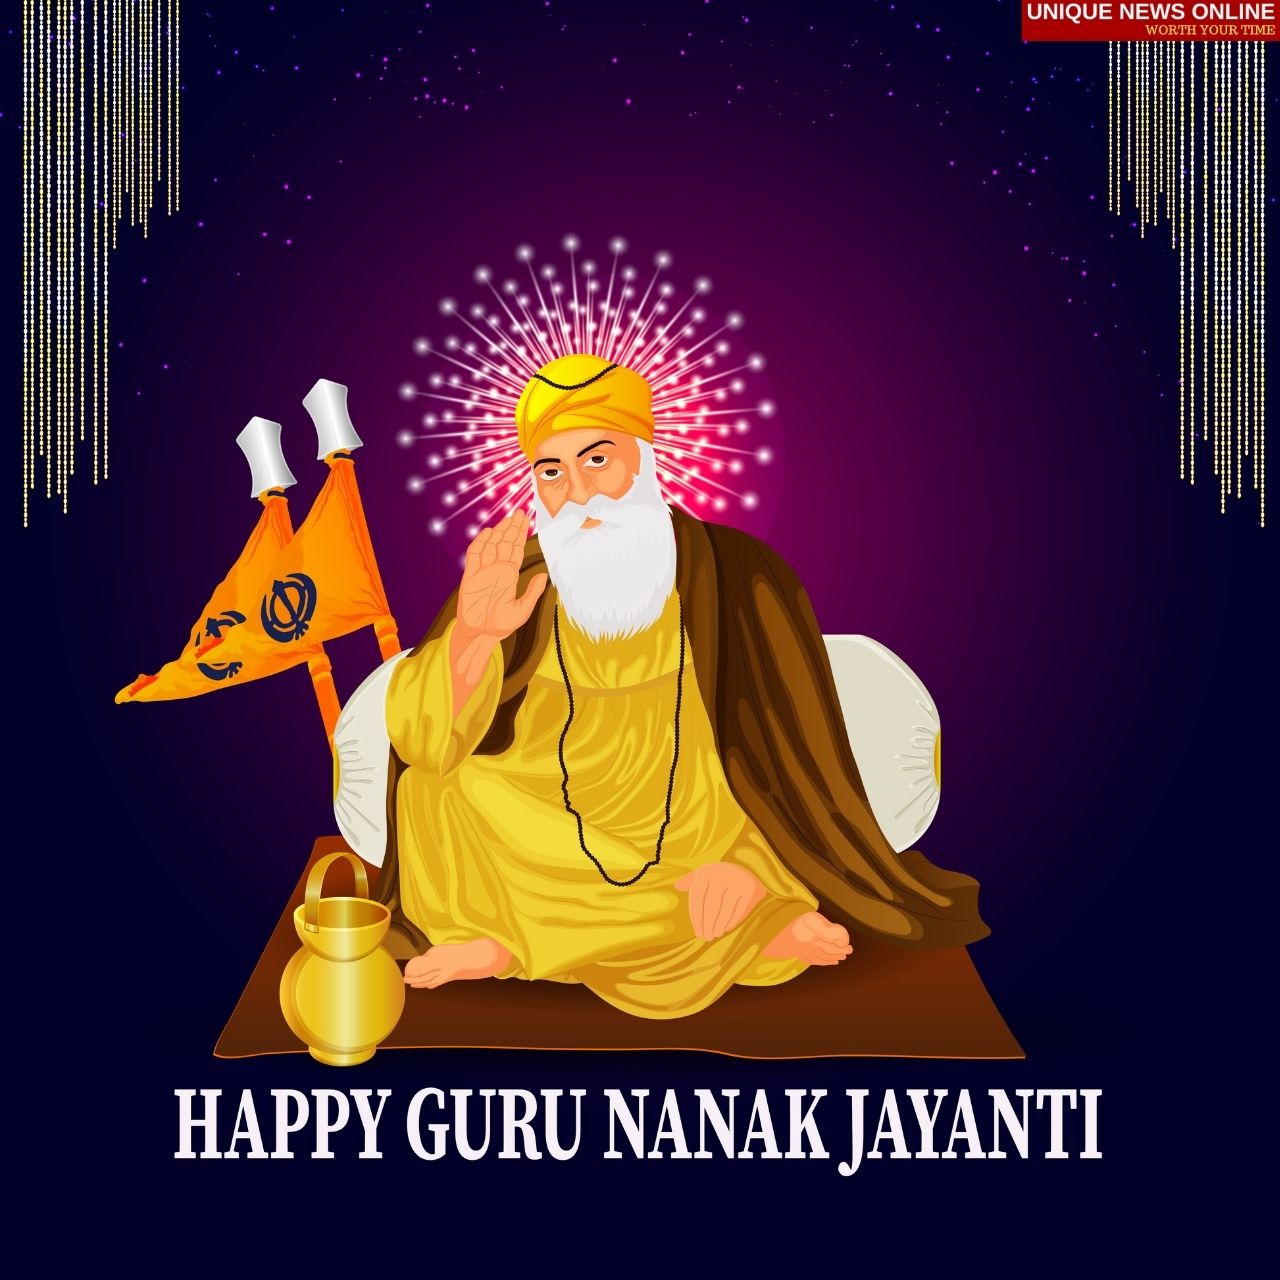 Guru Nanak Jayanti 2021 WhatsApp Status Video to Download for Free